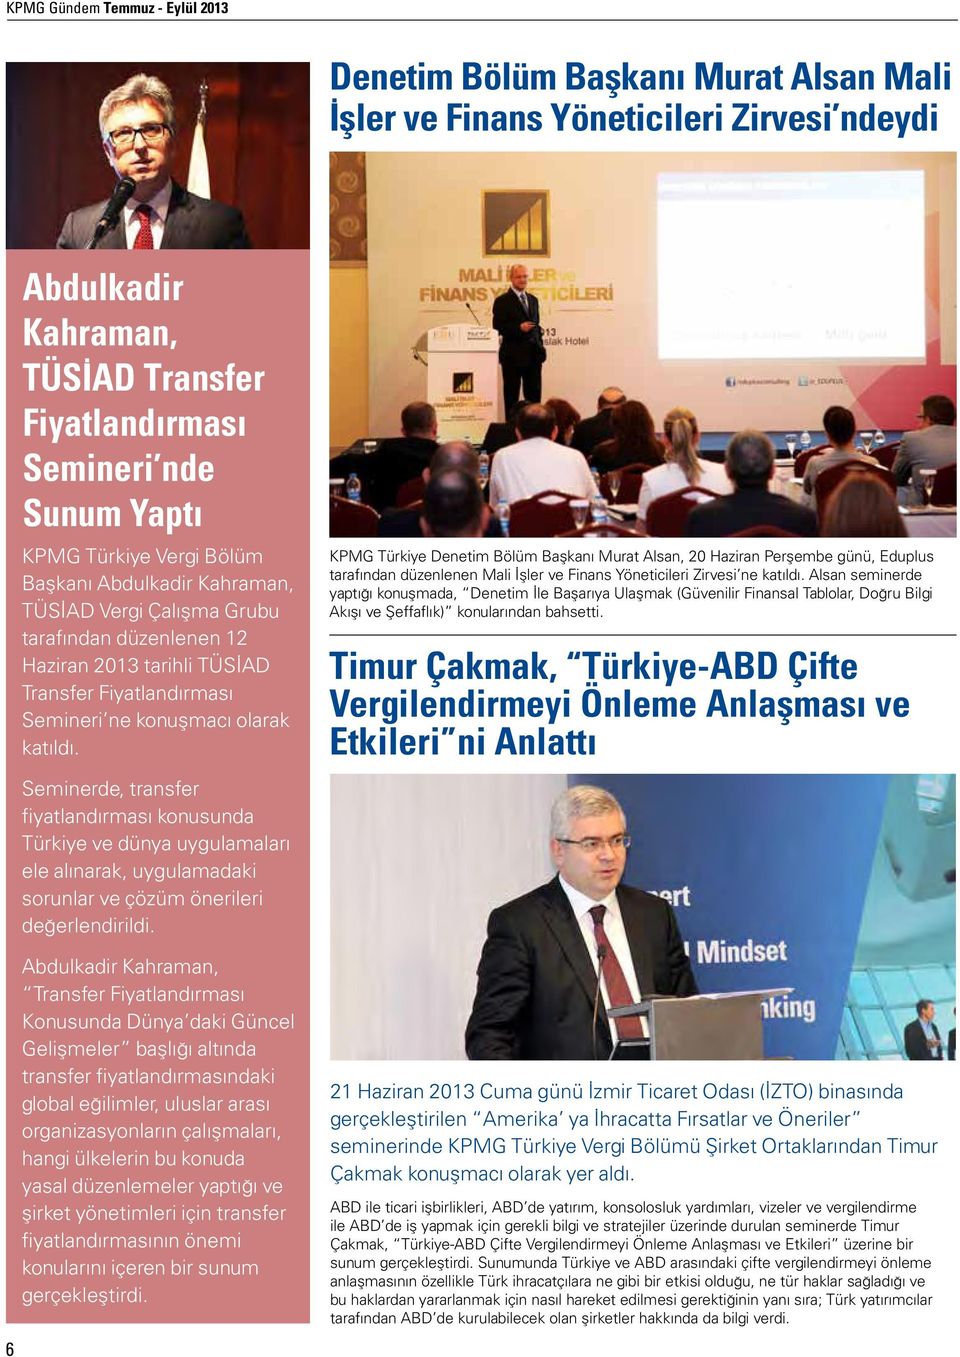 Seminerde, transfer fiyatlandırması konusunda Türkiye ve dünya uygulamaları ele alınarak, uygulamadaki sorunlar ve çözüm önerileri değerlendirildi.